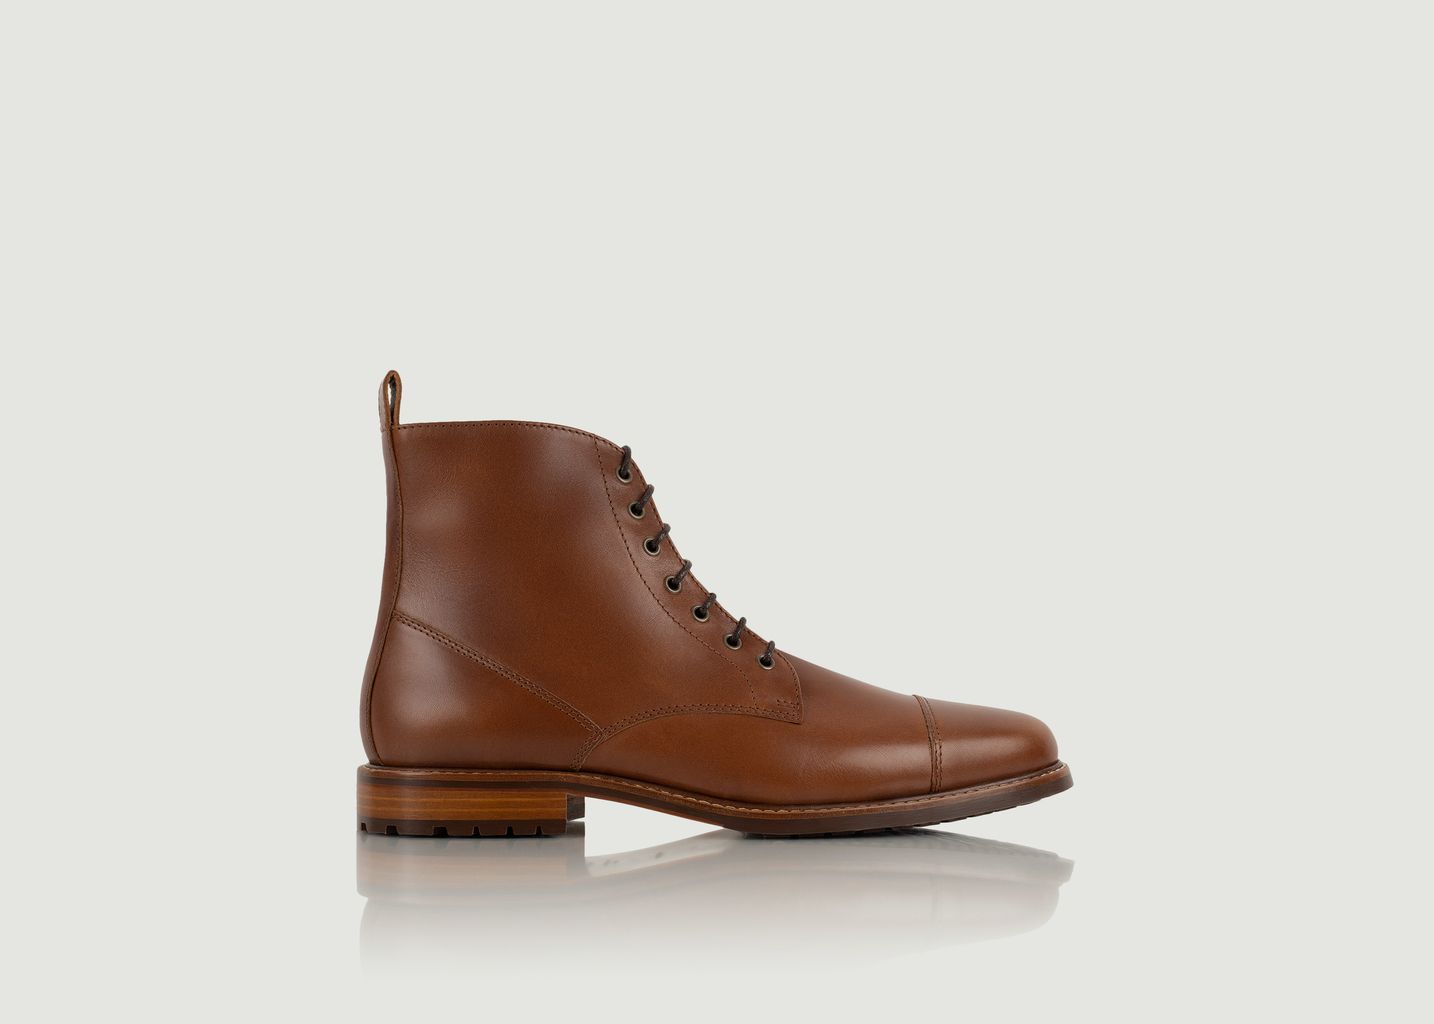 Bushwick leather boots - Bobbies Paris